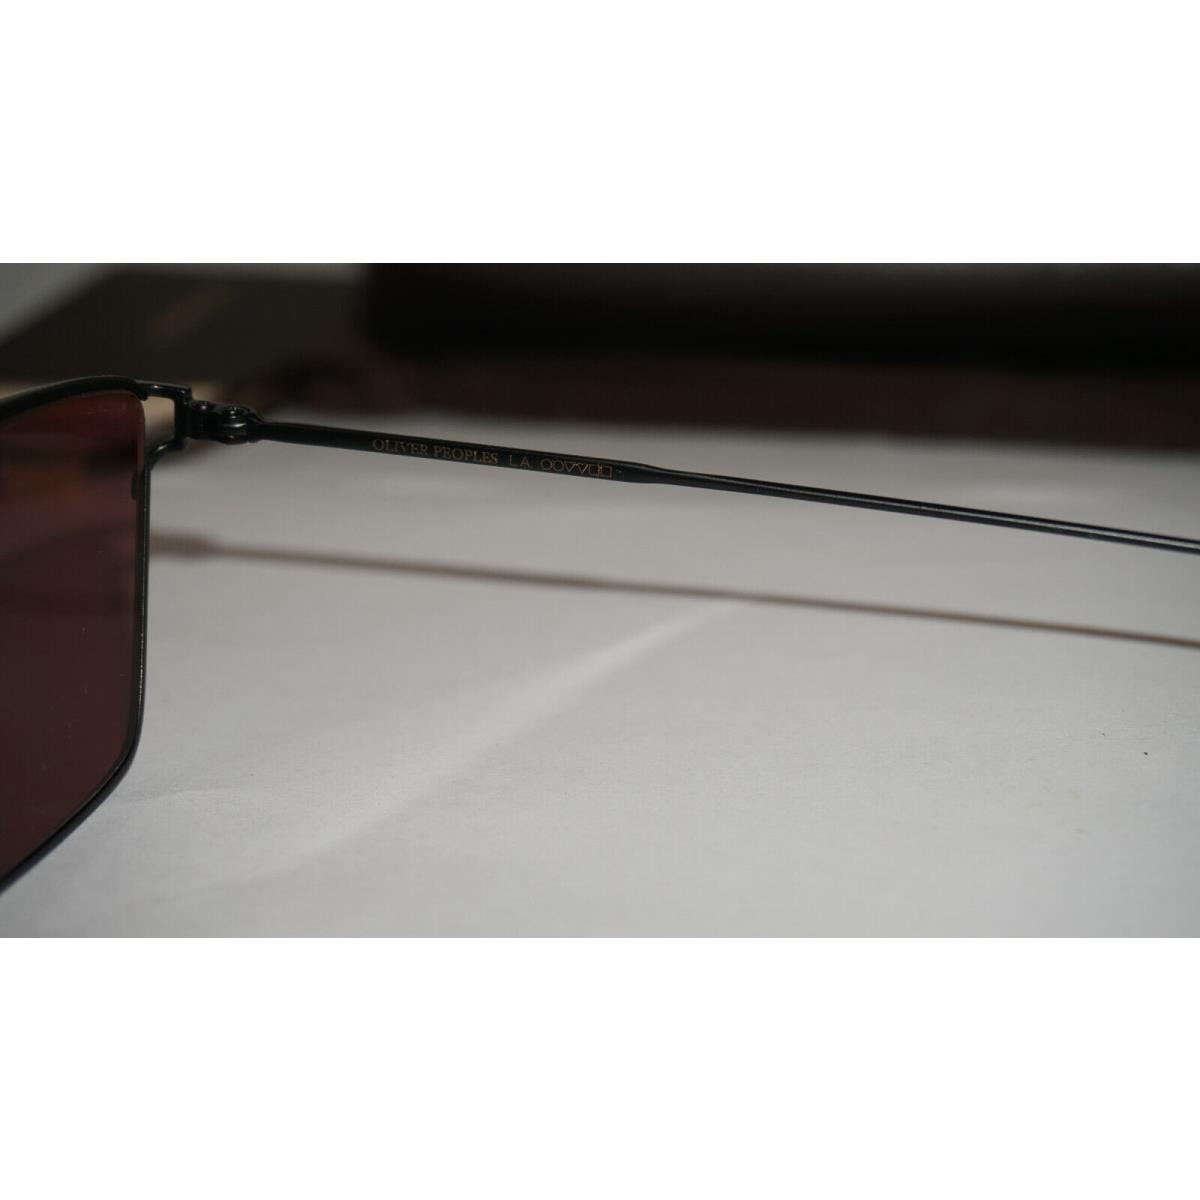 Oliver Peoples sunglasses  - Black Frame, Red Lens 6